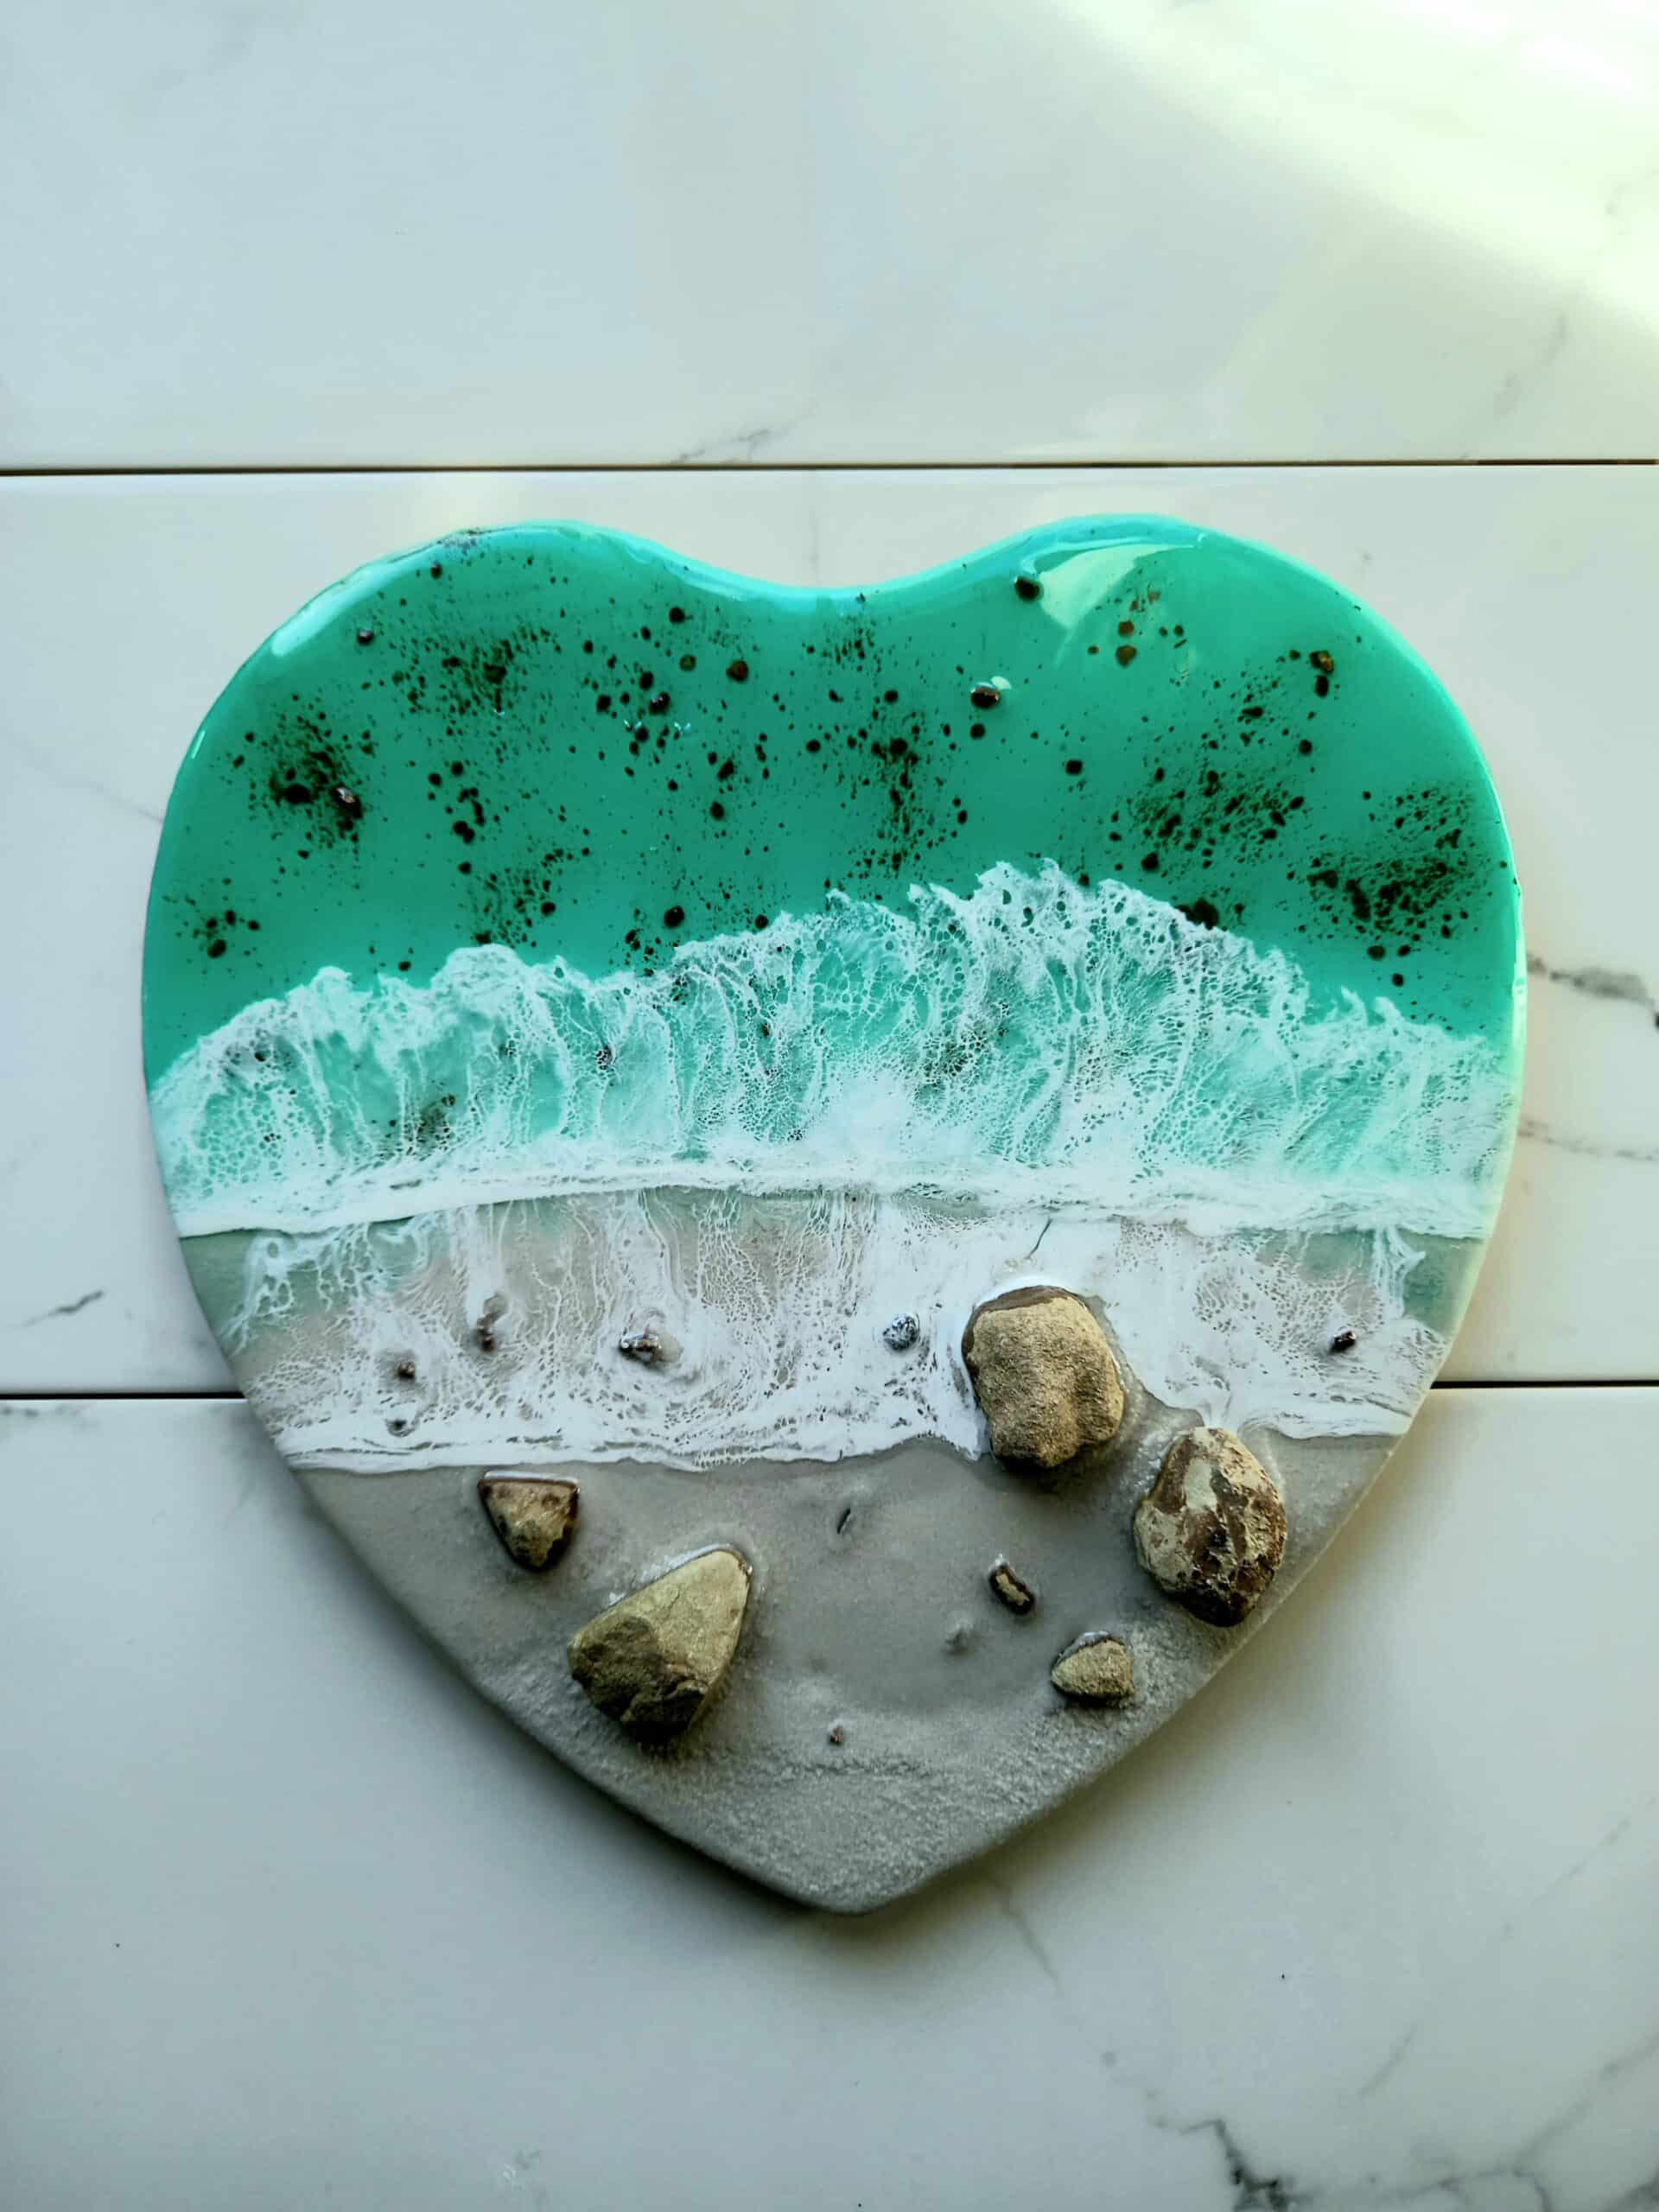 Heart-shaped, resin art piece resembling seashore.